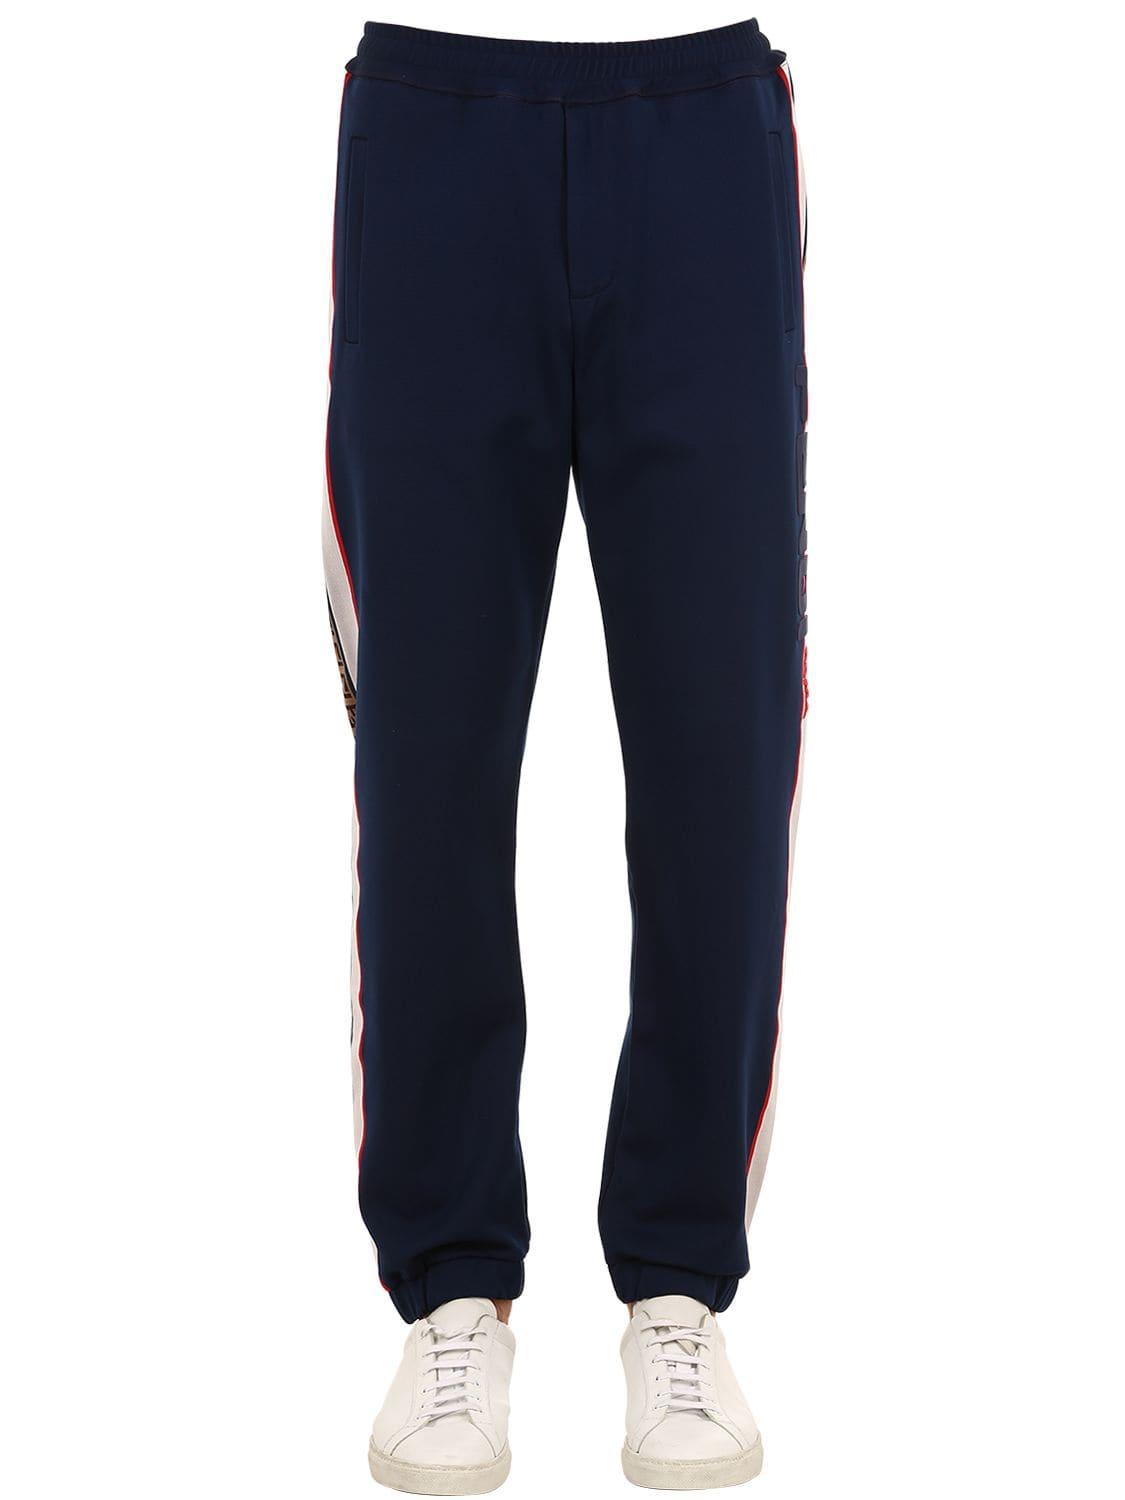 Fendi Mania Sweatshirt & Sweatpants in Blue for Men - Lyst